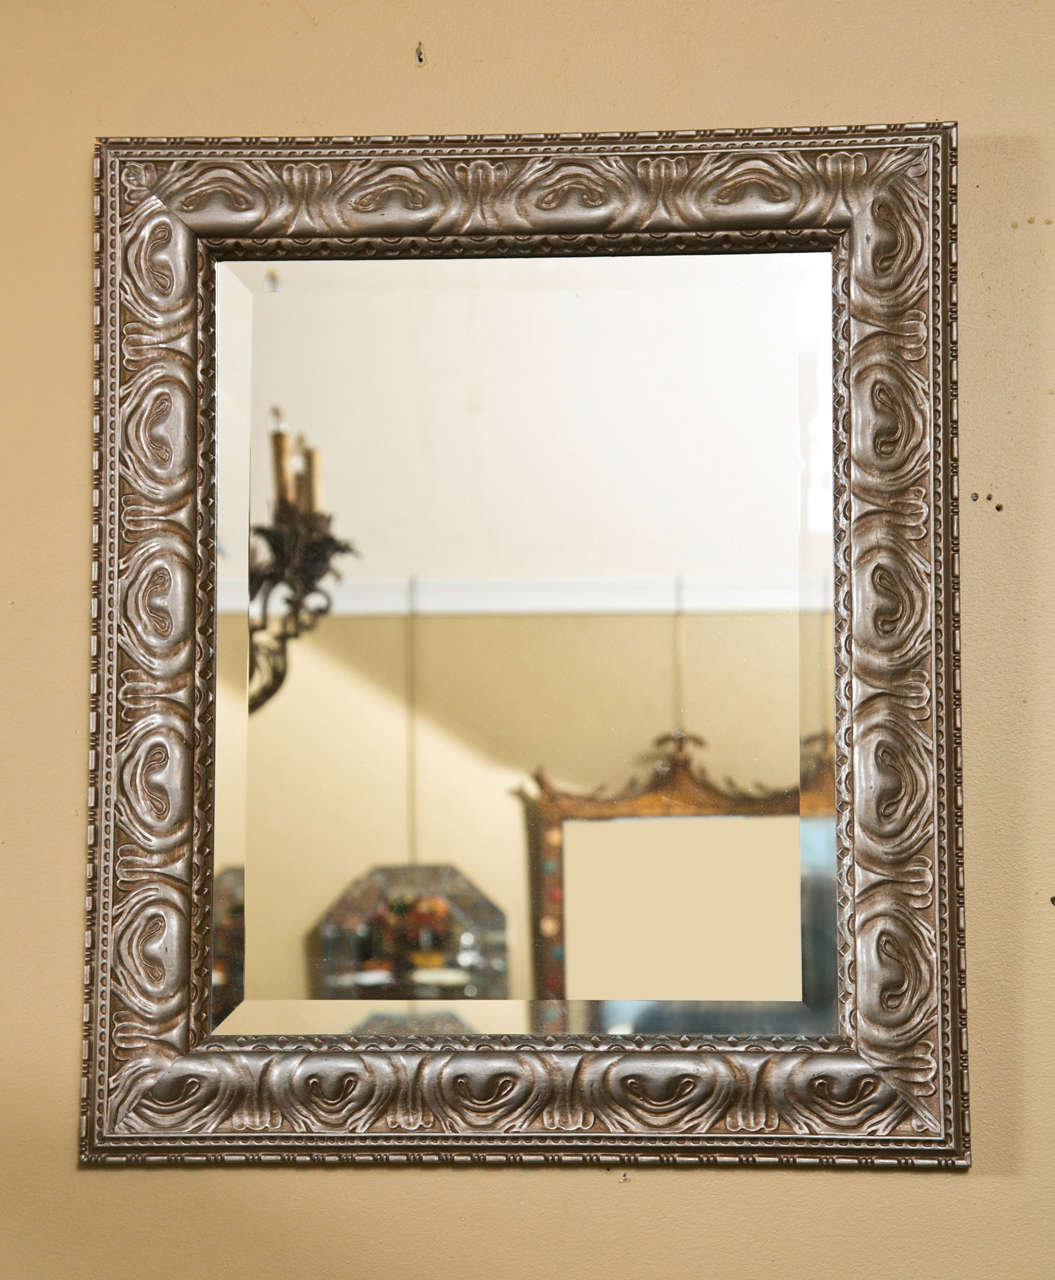 Paire de magnifiques miroirs dorés à l'argent, chacun ayant un verre rectangulaire biseauté surmonté d'un cadre en bois sculpté à la finition dorée à l'argent. Manière de Jansen.